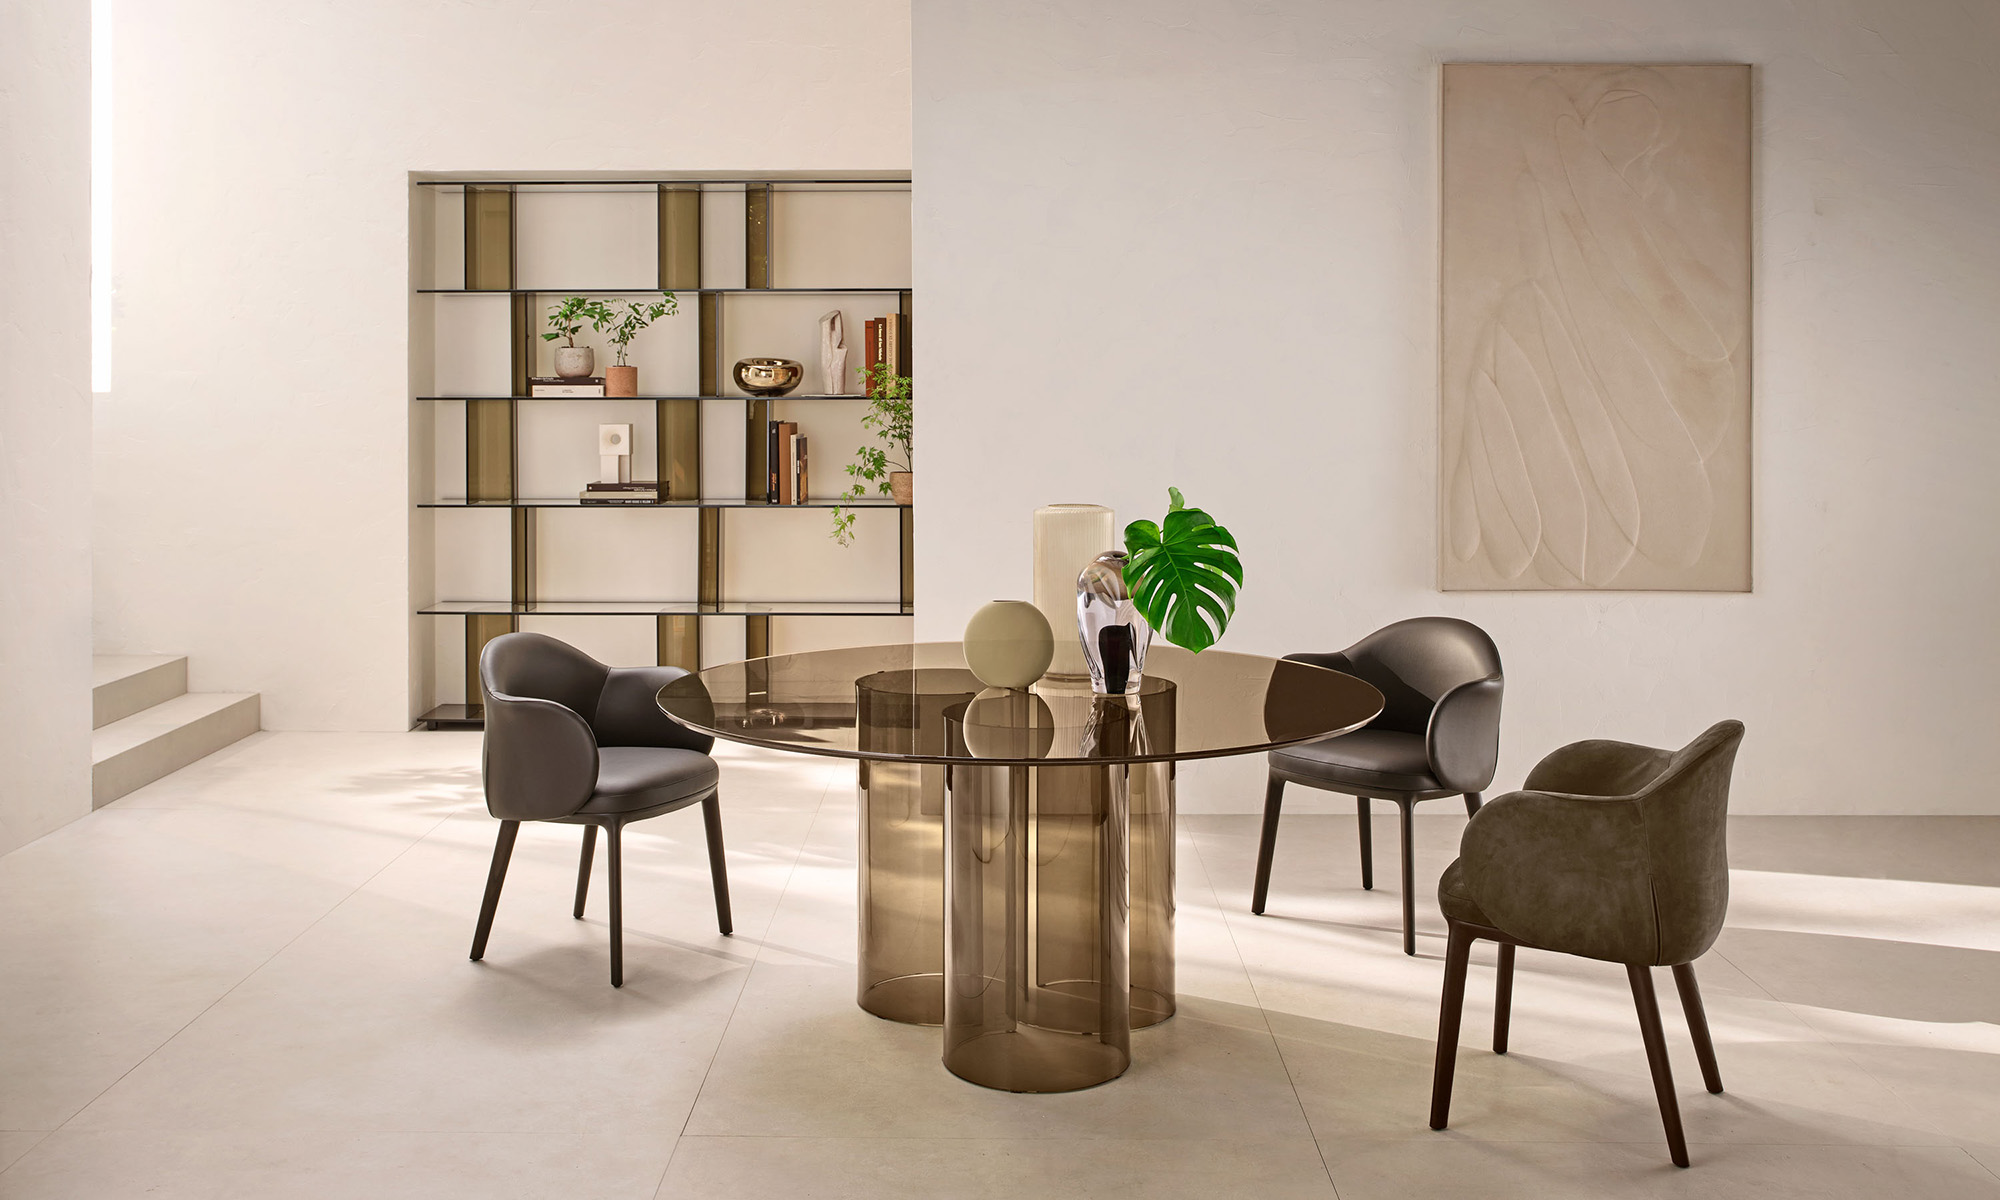 – glass Rodolfo by Luxor, Dordoni table, Italia FIAM designed the